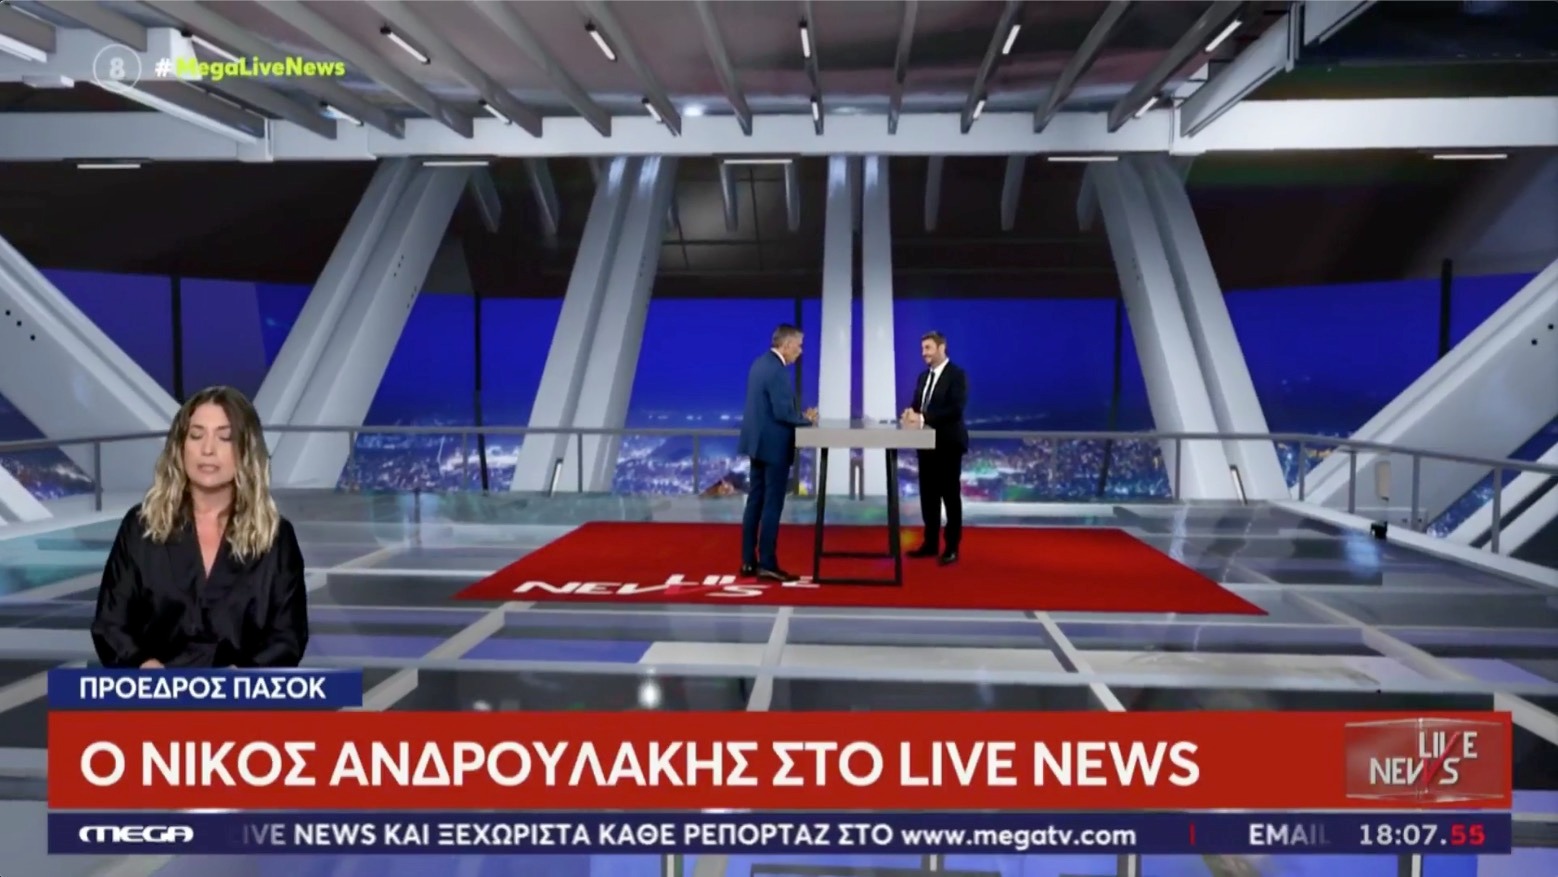 Νίκος Ανδρουλάκης: «Φιλοδοξούμε να υπάρχει μία δύναμη, που θα αντιπαρατεθεί στην ασυδοσία, την αλαζονεία και την απομάκρυνση του Πρωθυπουργού από τα μεγάλα προβλήματα της κοινωνίας»